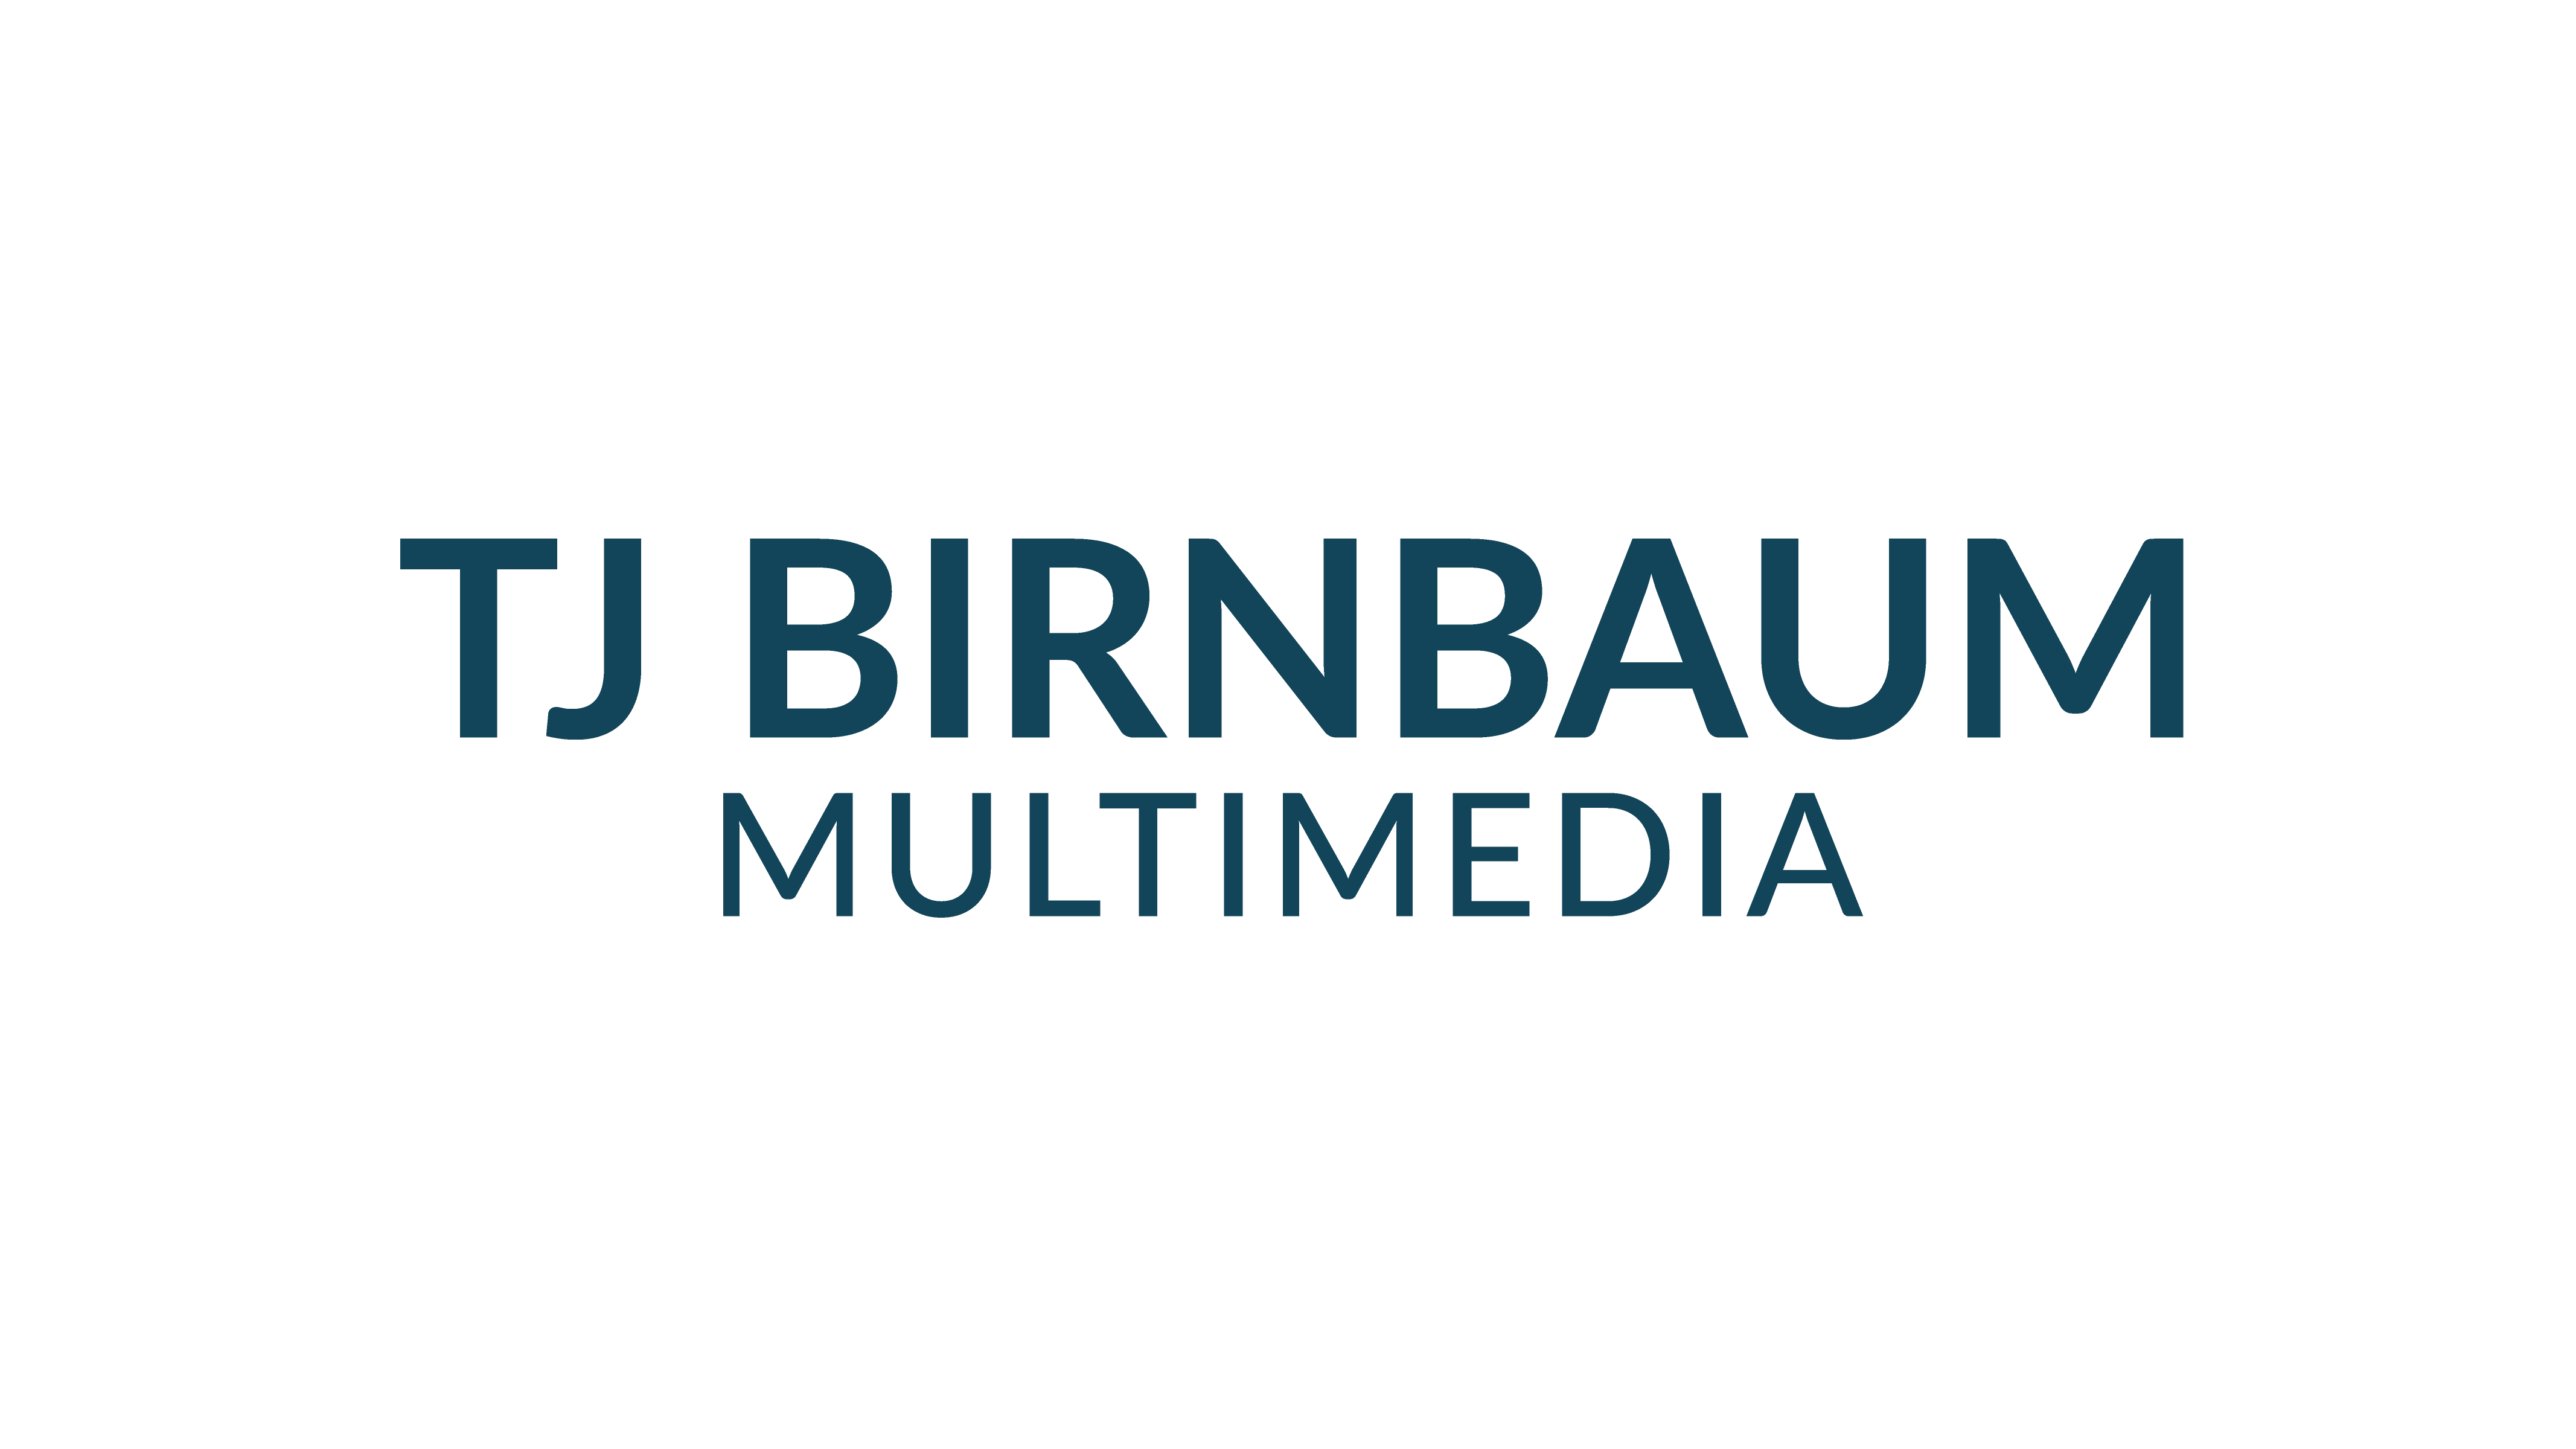 TJ Birnbaum Multimedia